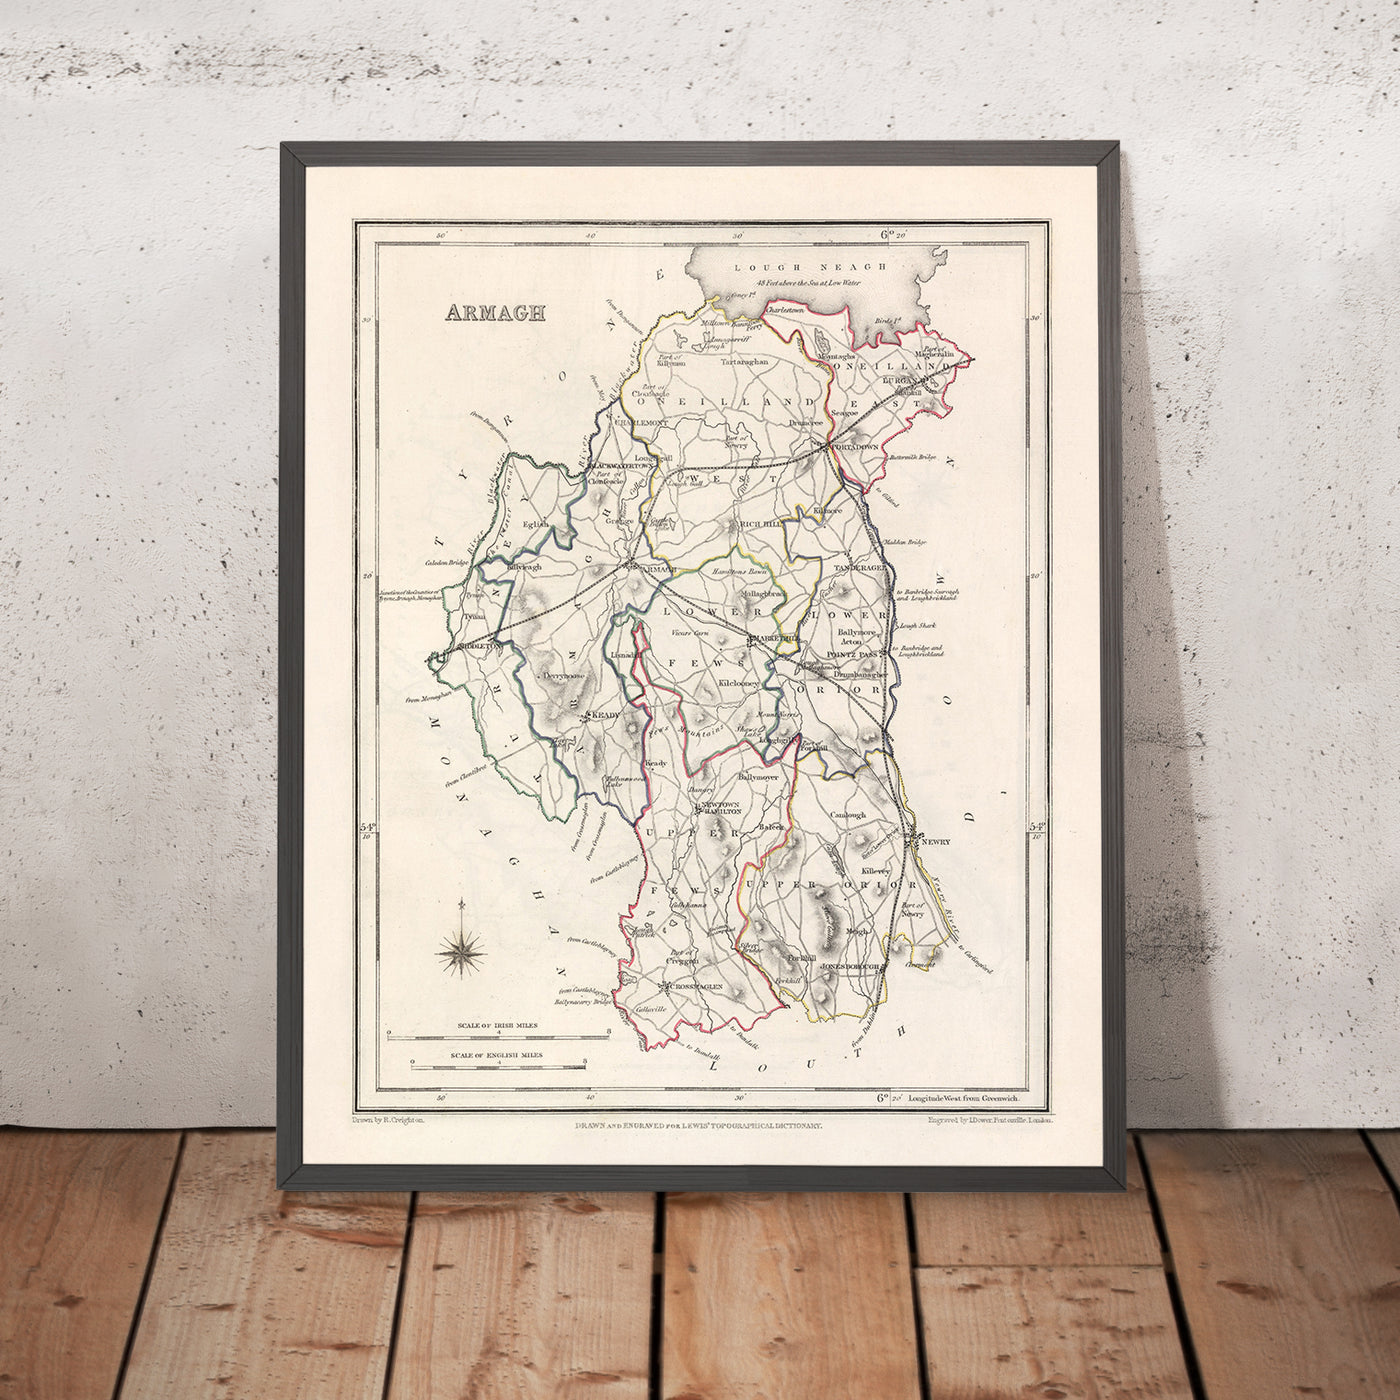 Alte Karte der Grafschaft Armagh von Samuel Lewis, 1844: Lurgan, Portadown, Markethill, Keady, Tandragee